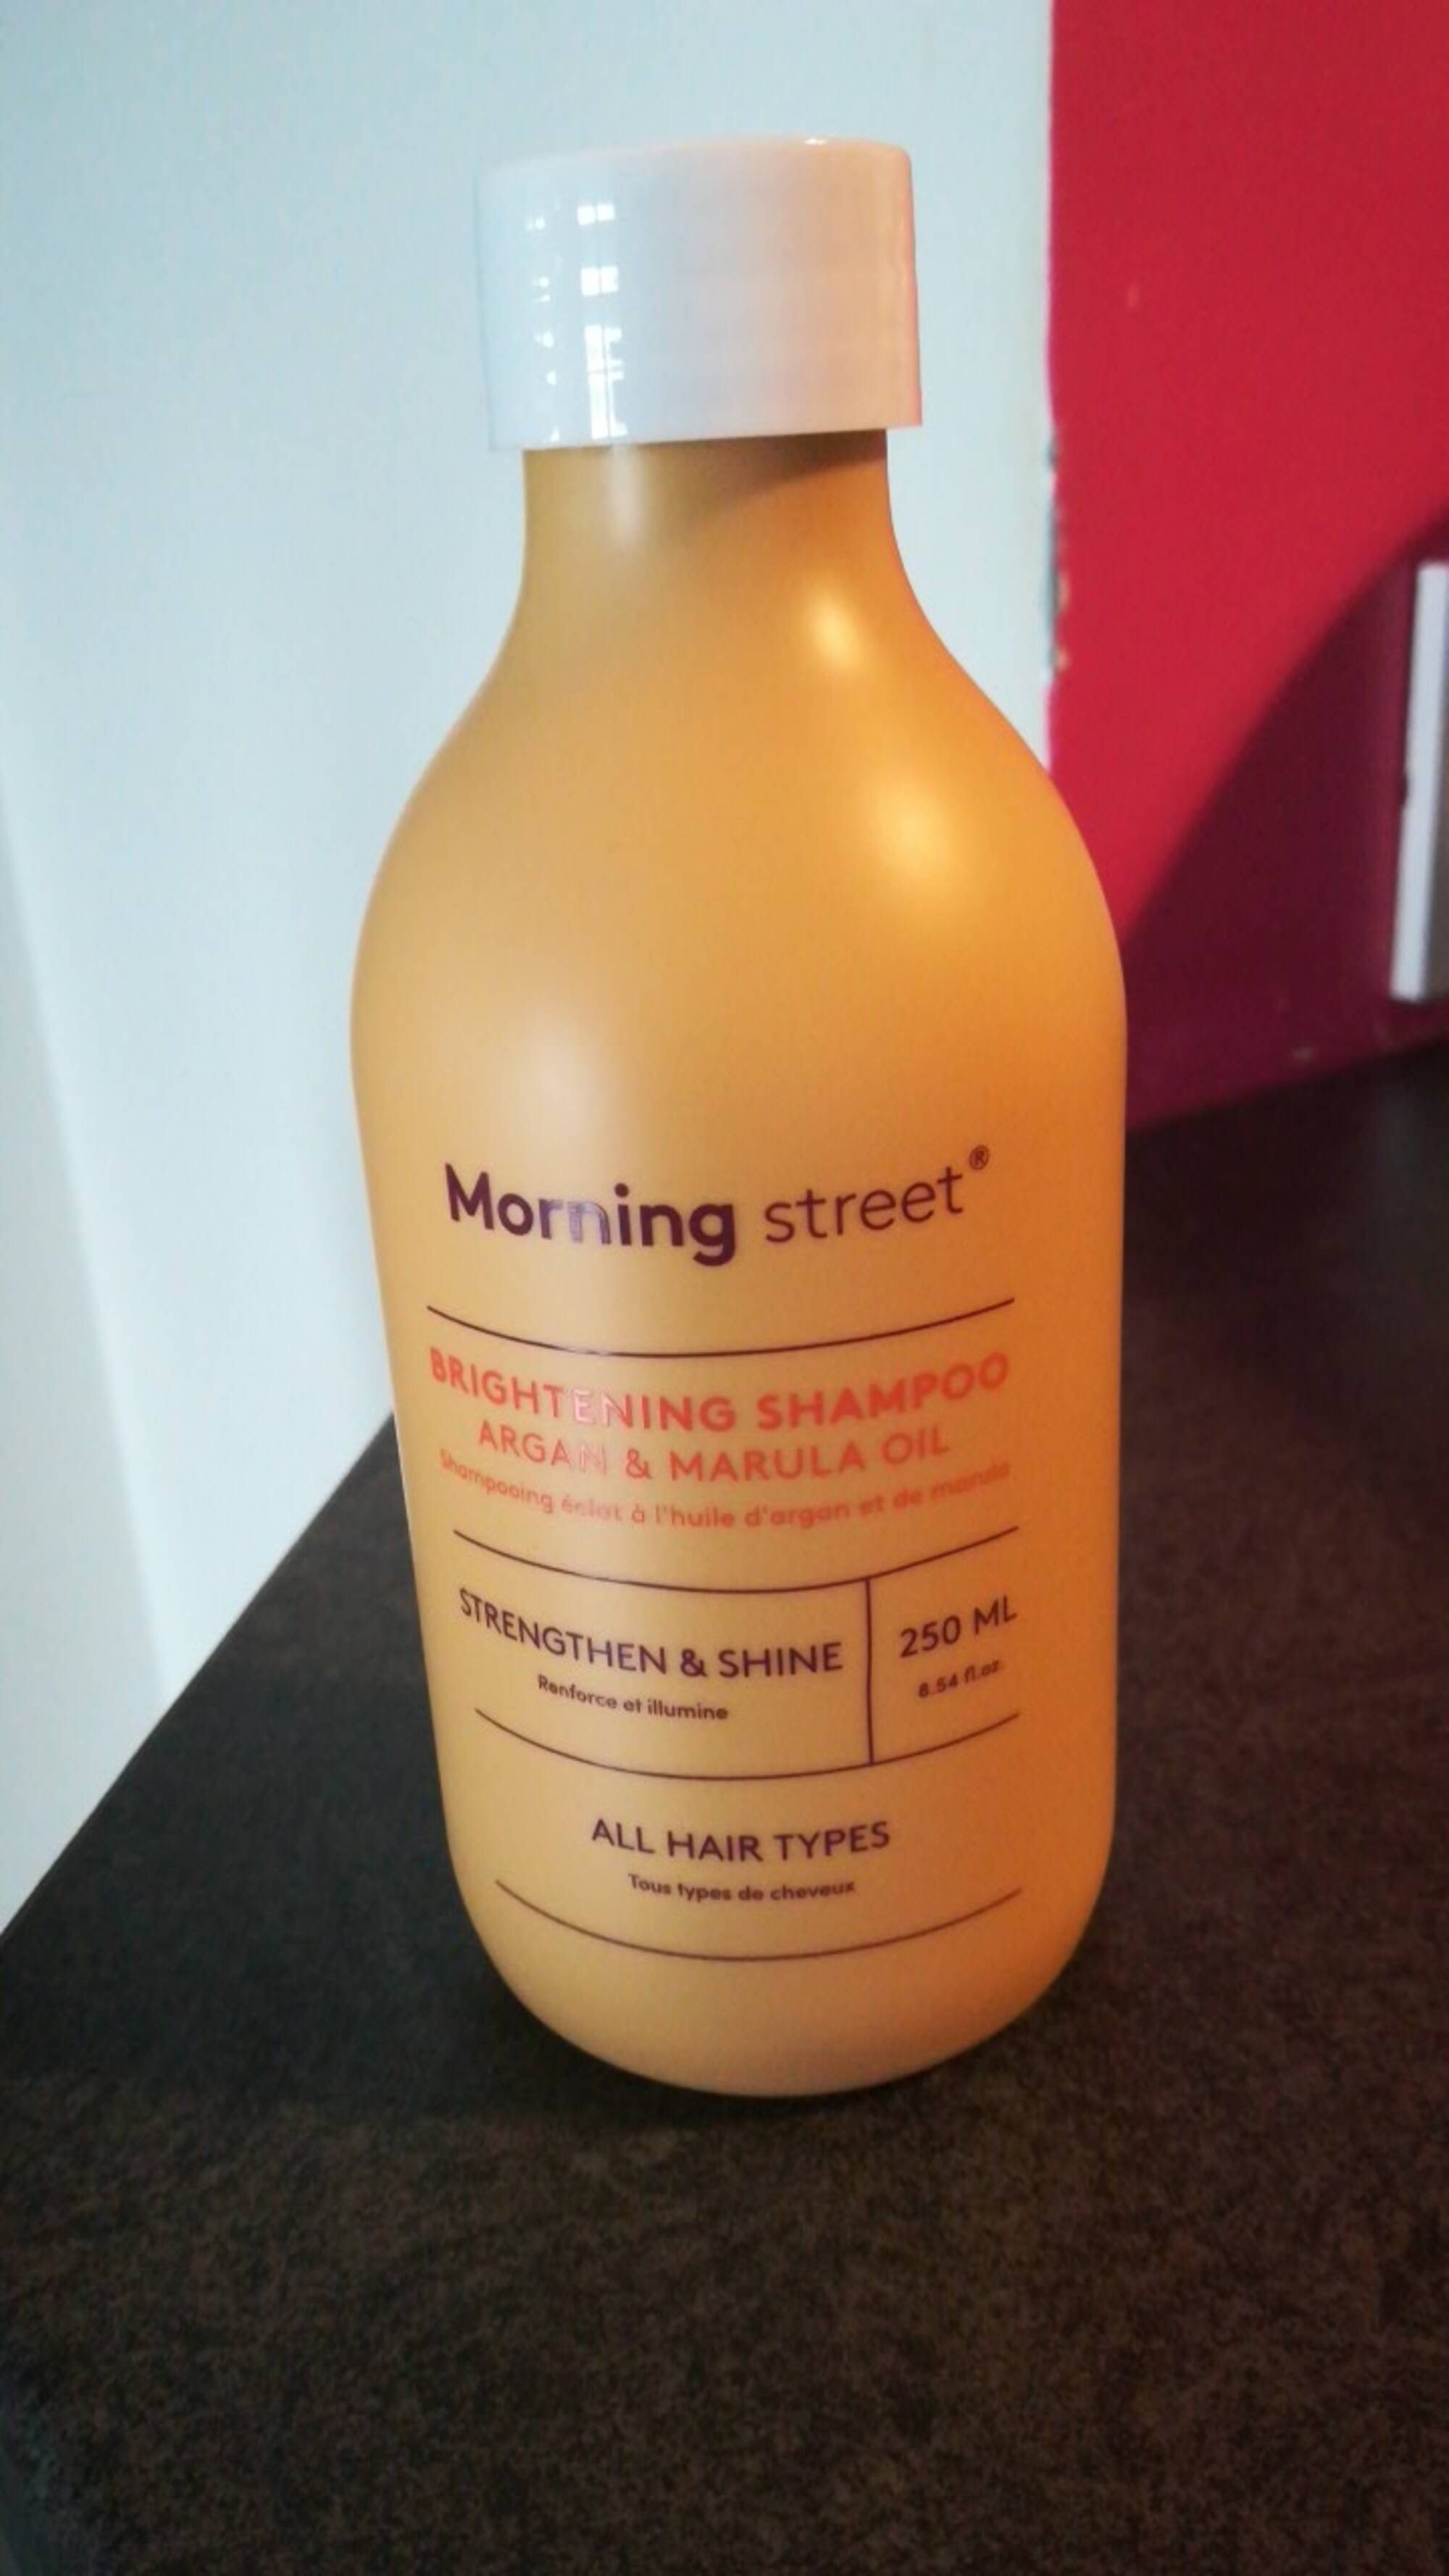 MORNING STREET - Brightening shampoo